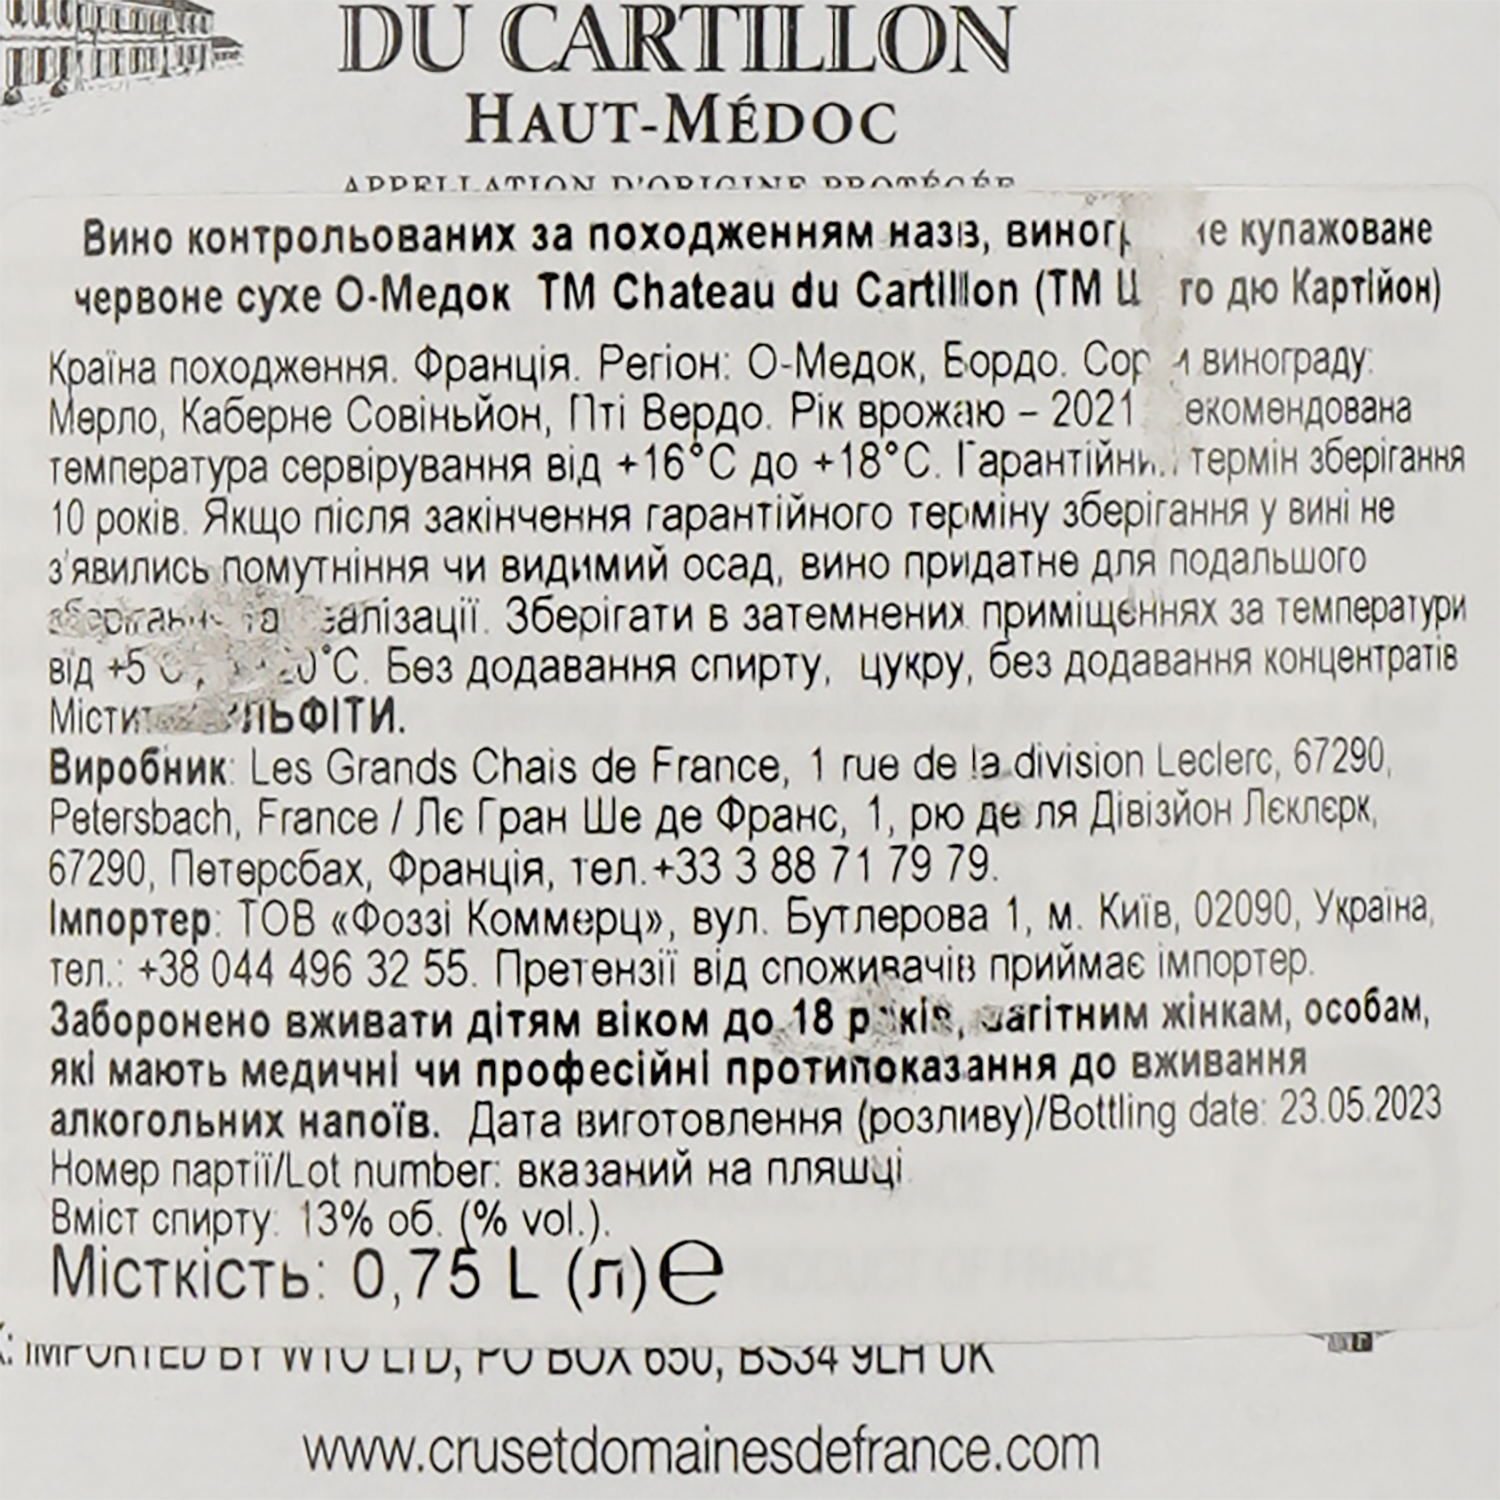 Вино Chateau du Cartillon Haut-Medoc CrBrgs, 14%, 750 мл (674263) - фото 3